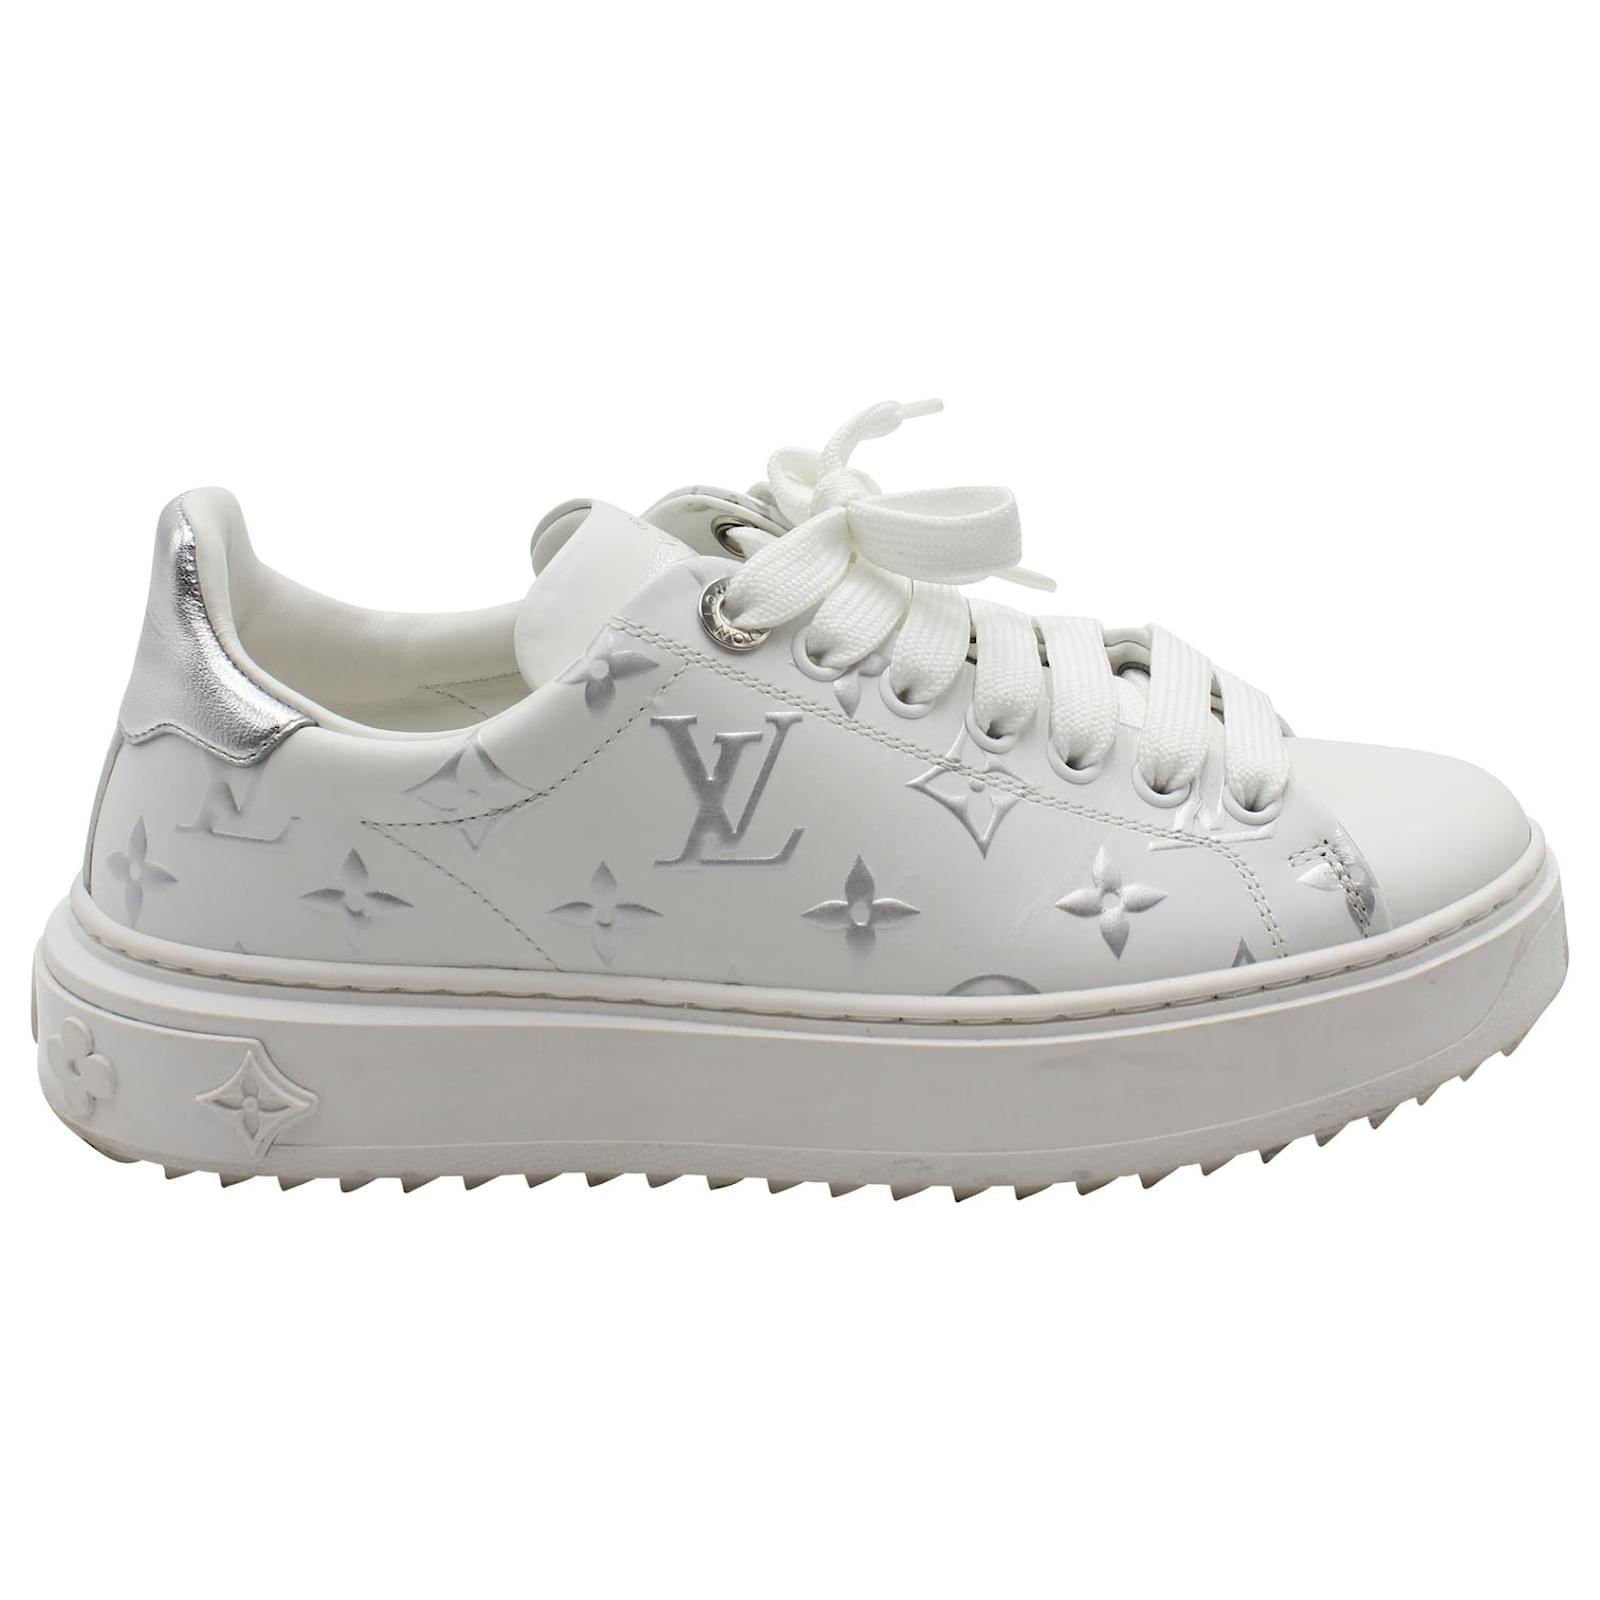 Louis Vuitton Monogram Sneakers Tennis Shoes Canvas Leather LV